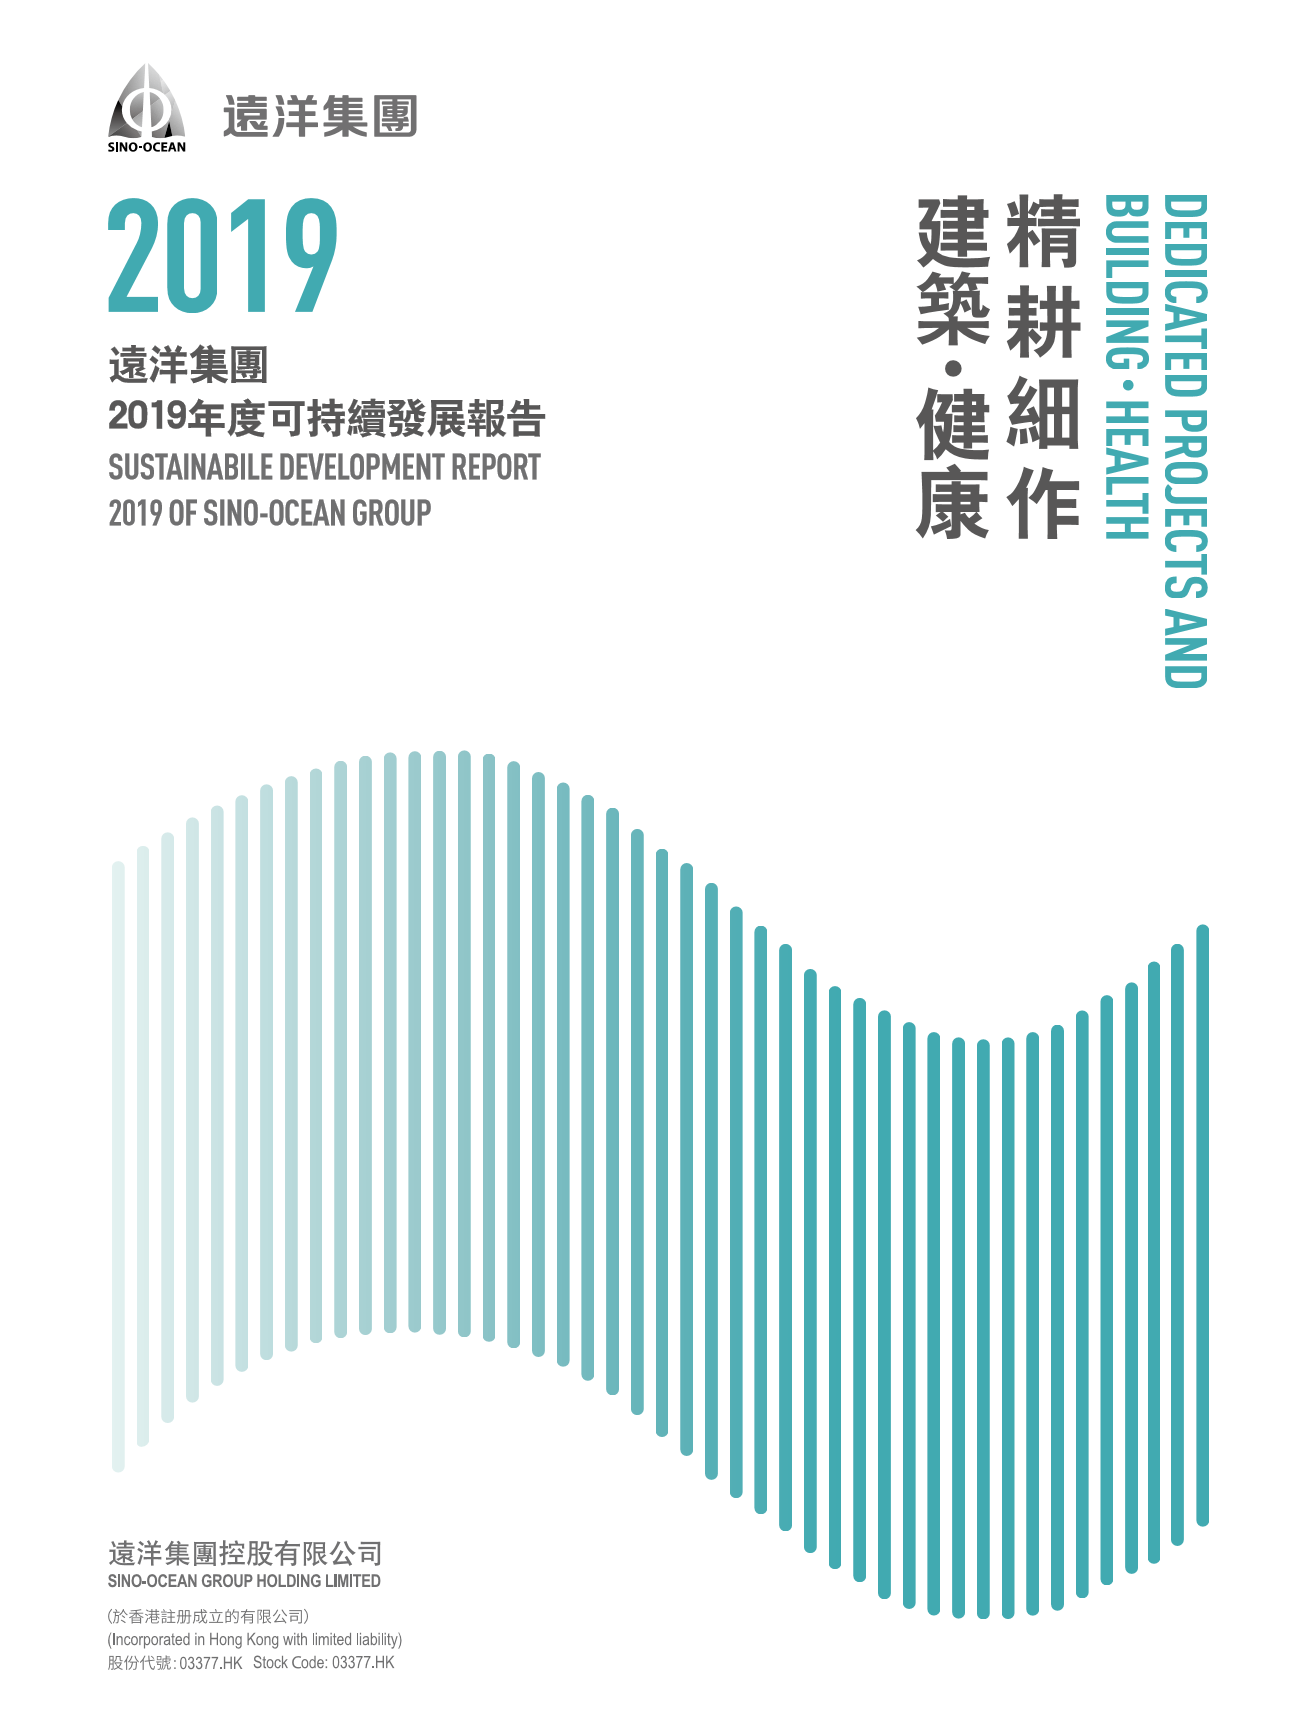 《远洋集团发布2019年度可持续发展报告 全年公益捐赠达694万》-中国网地产